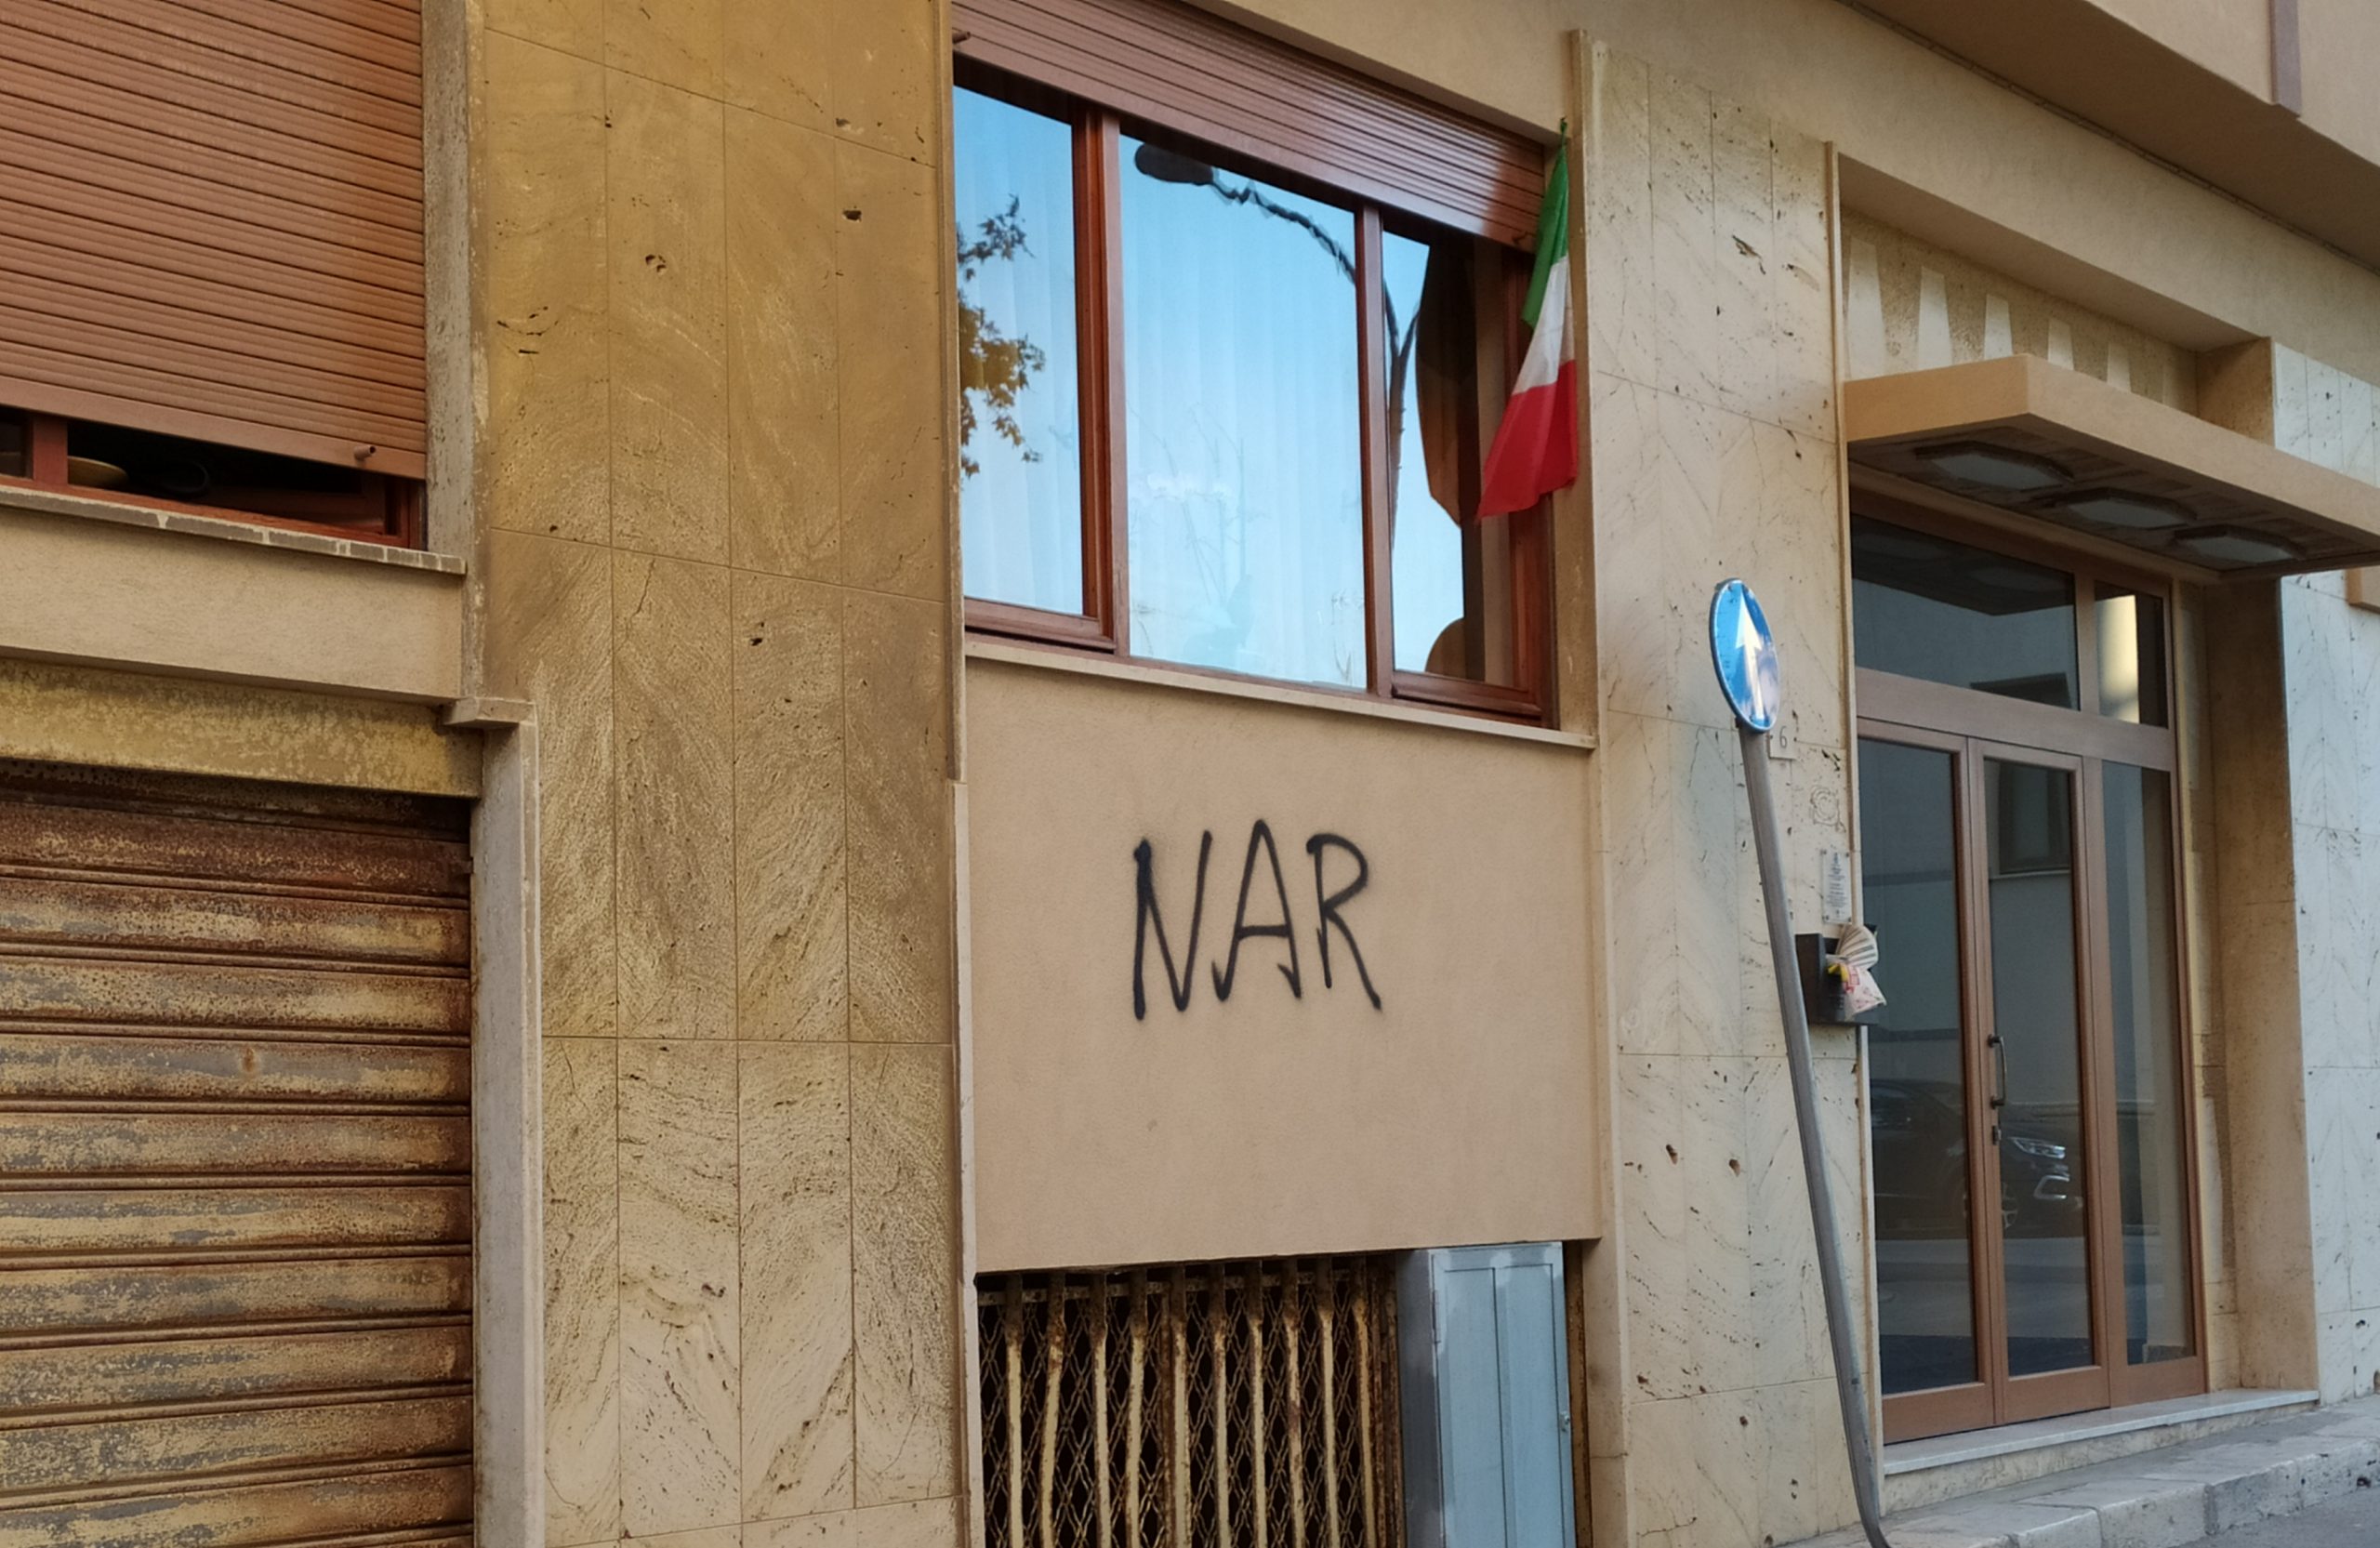 Da Vox Populi a Nar: il punto sui segni e i simboli dell’estrema destra a Marsala